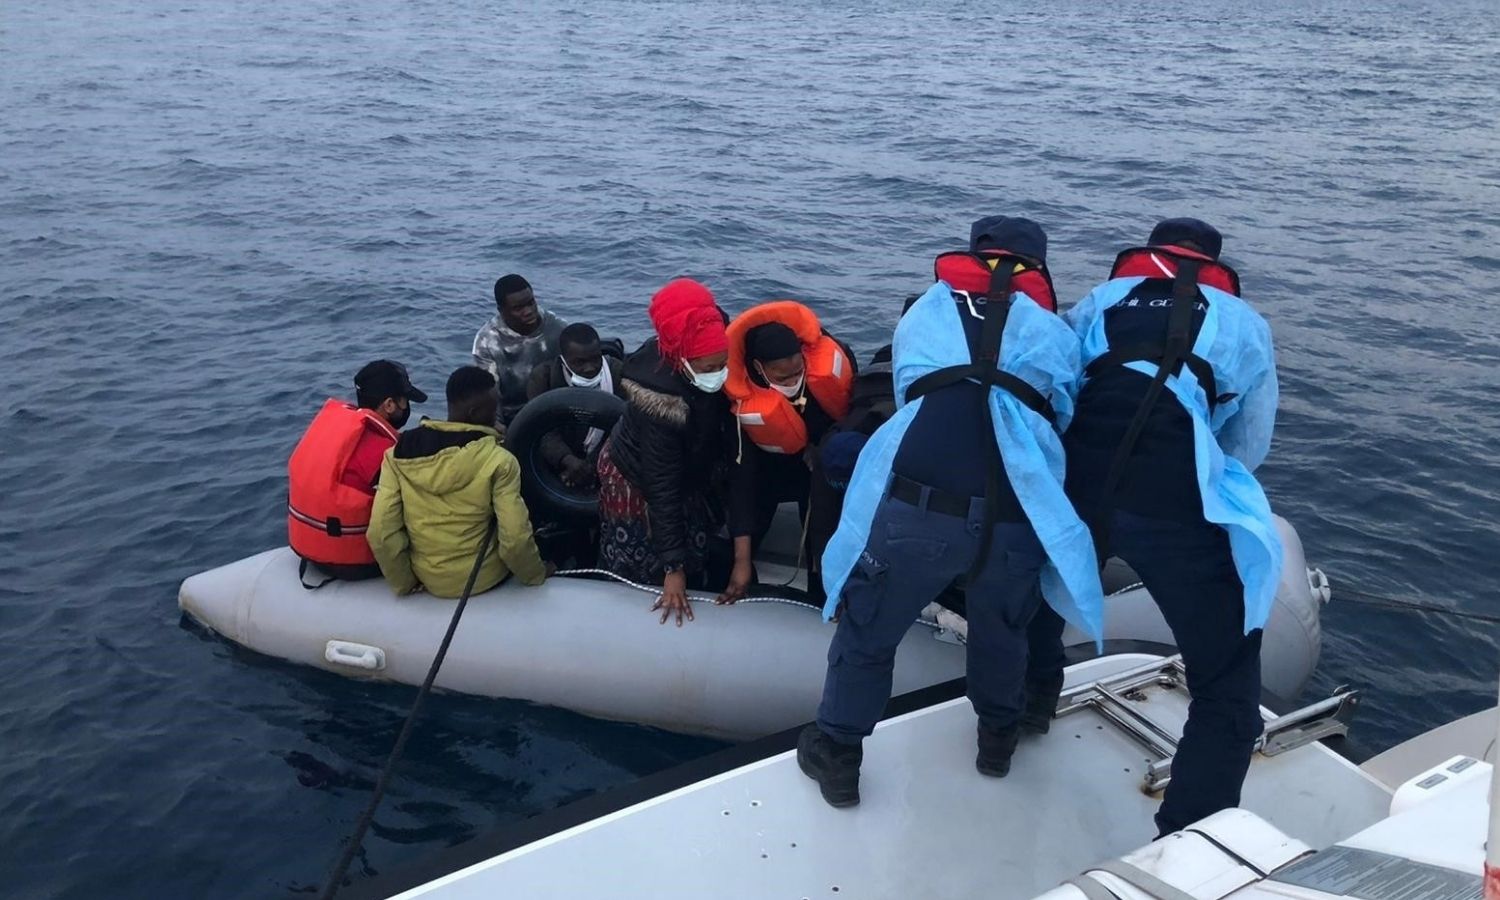 شرطة خفر السواحل التركية تنقذ مهاجرين غير شرعيين في إزمير _18 من حزيران 2021 (sabah)